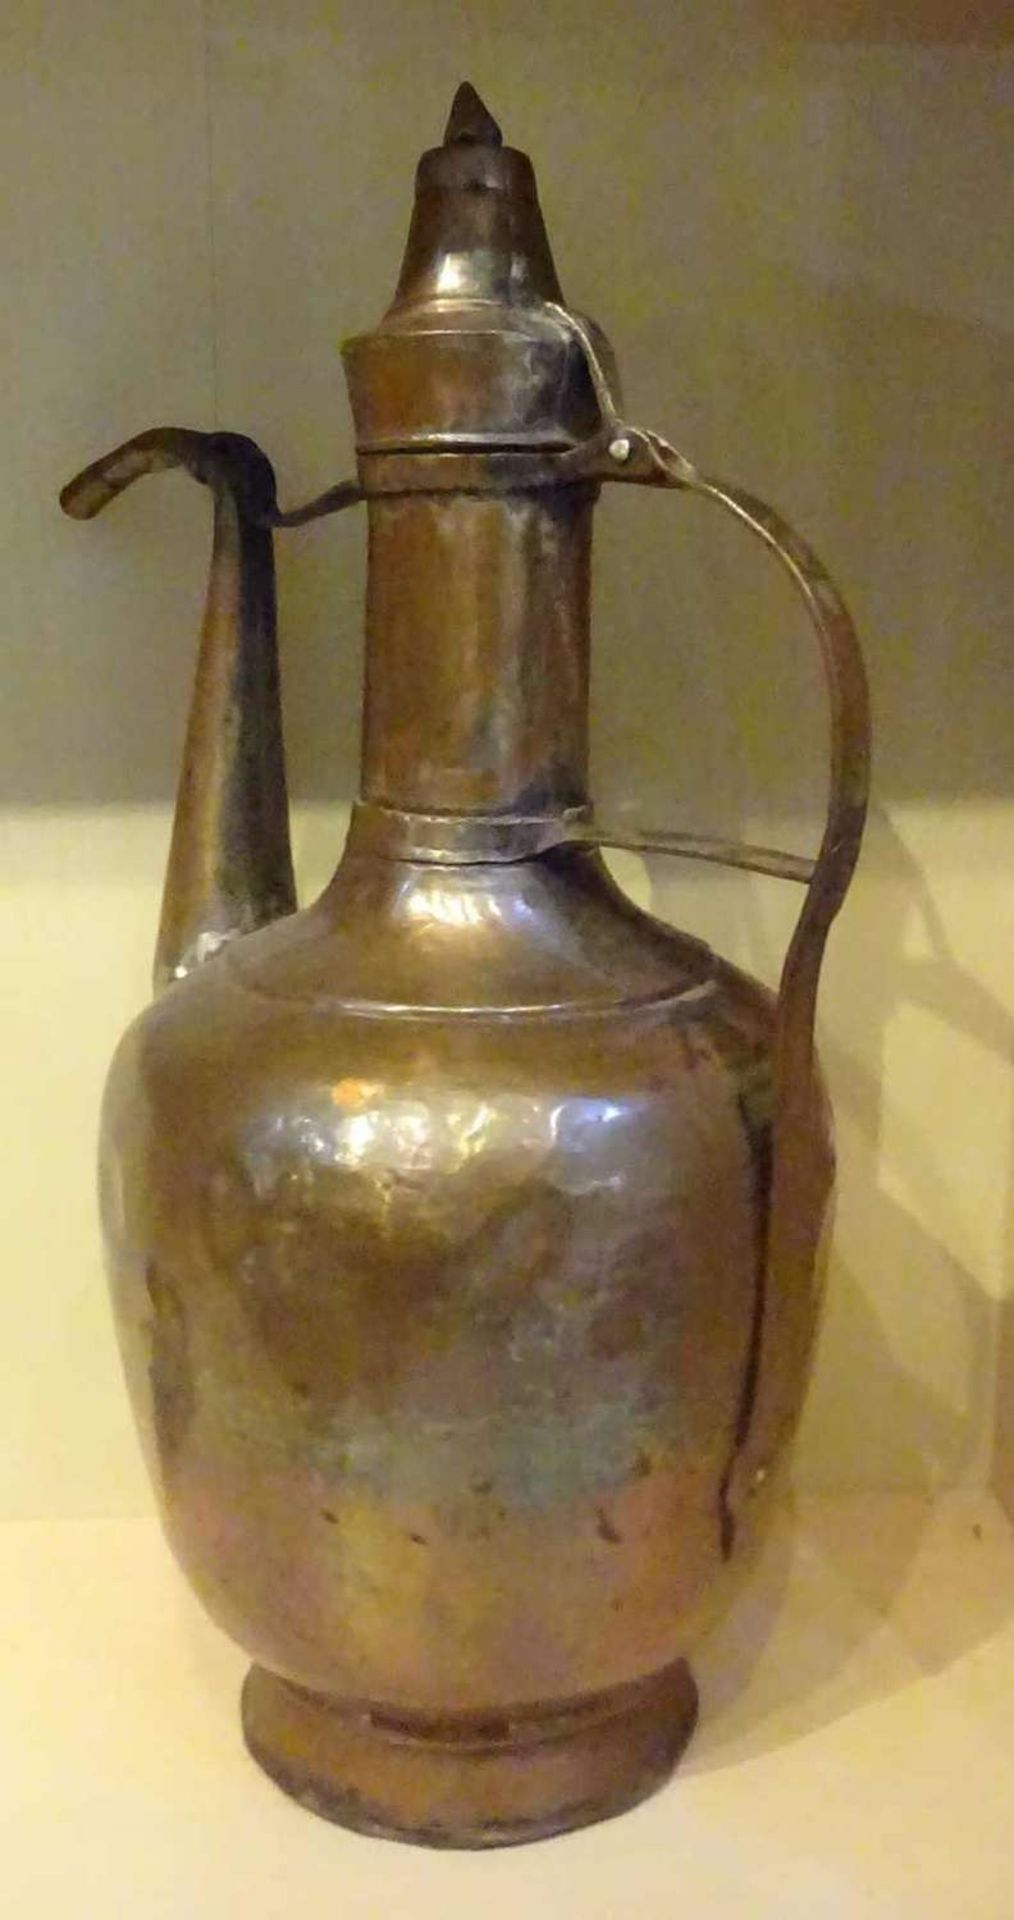 1 ausgefallene Kupferkanne als Deko, Höhe ca. 41 cm, gebrauchter Zustand.1 unusual copper pot as